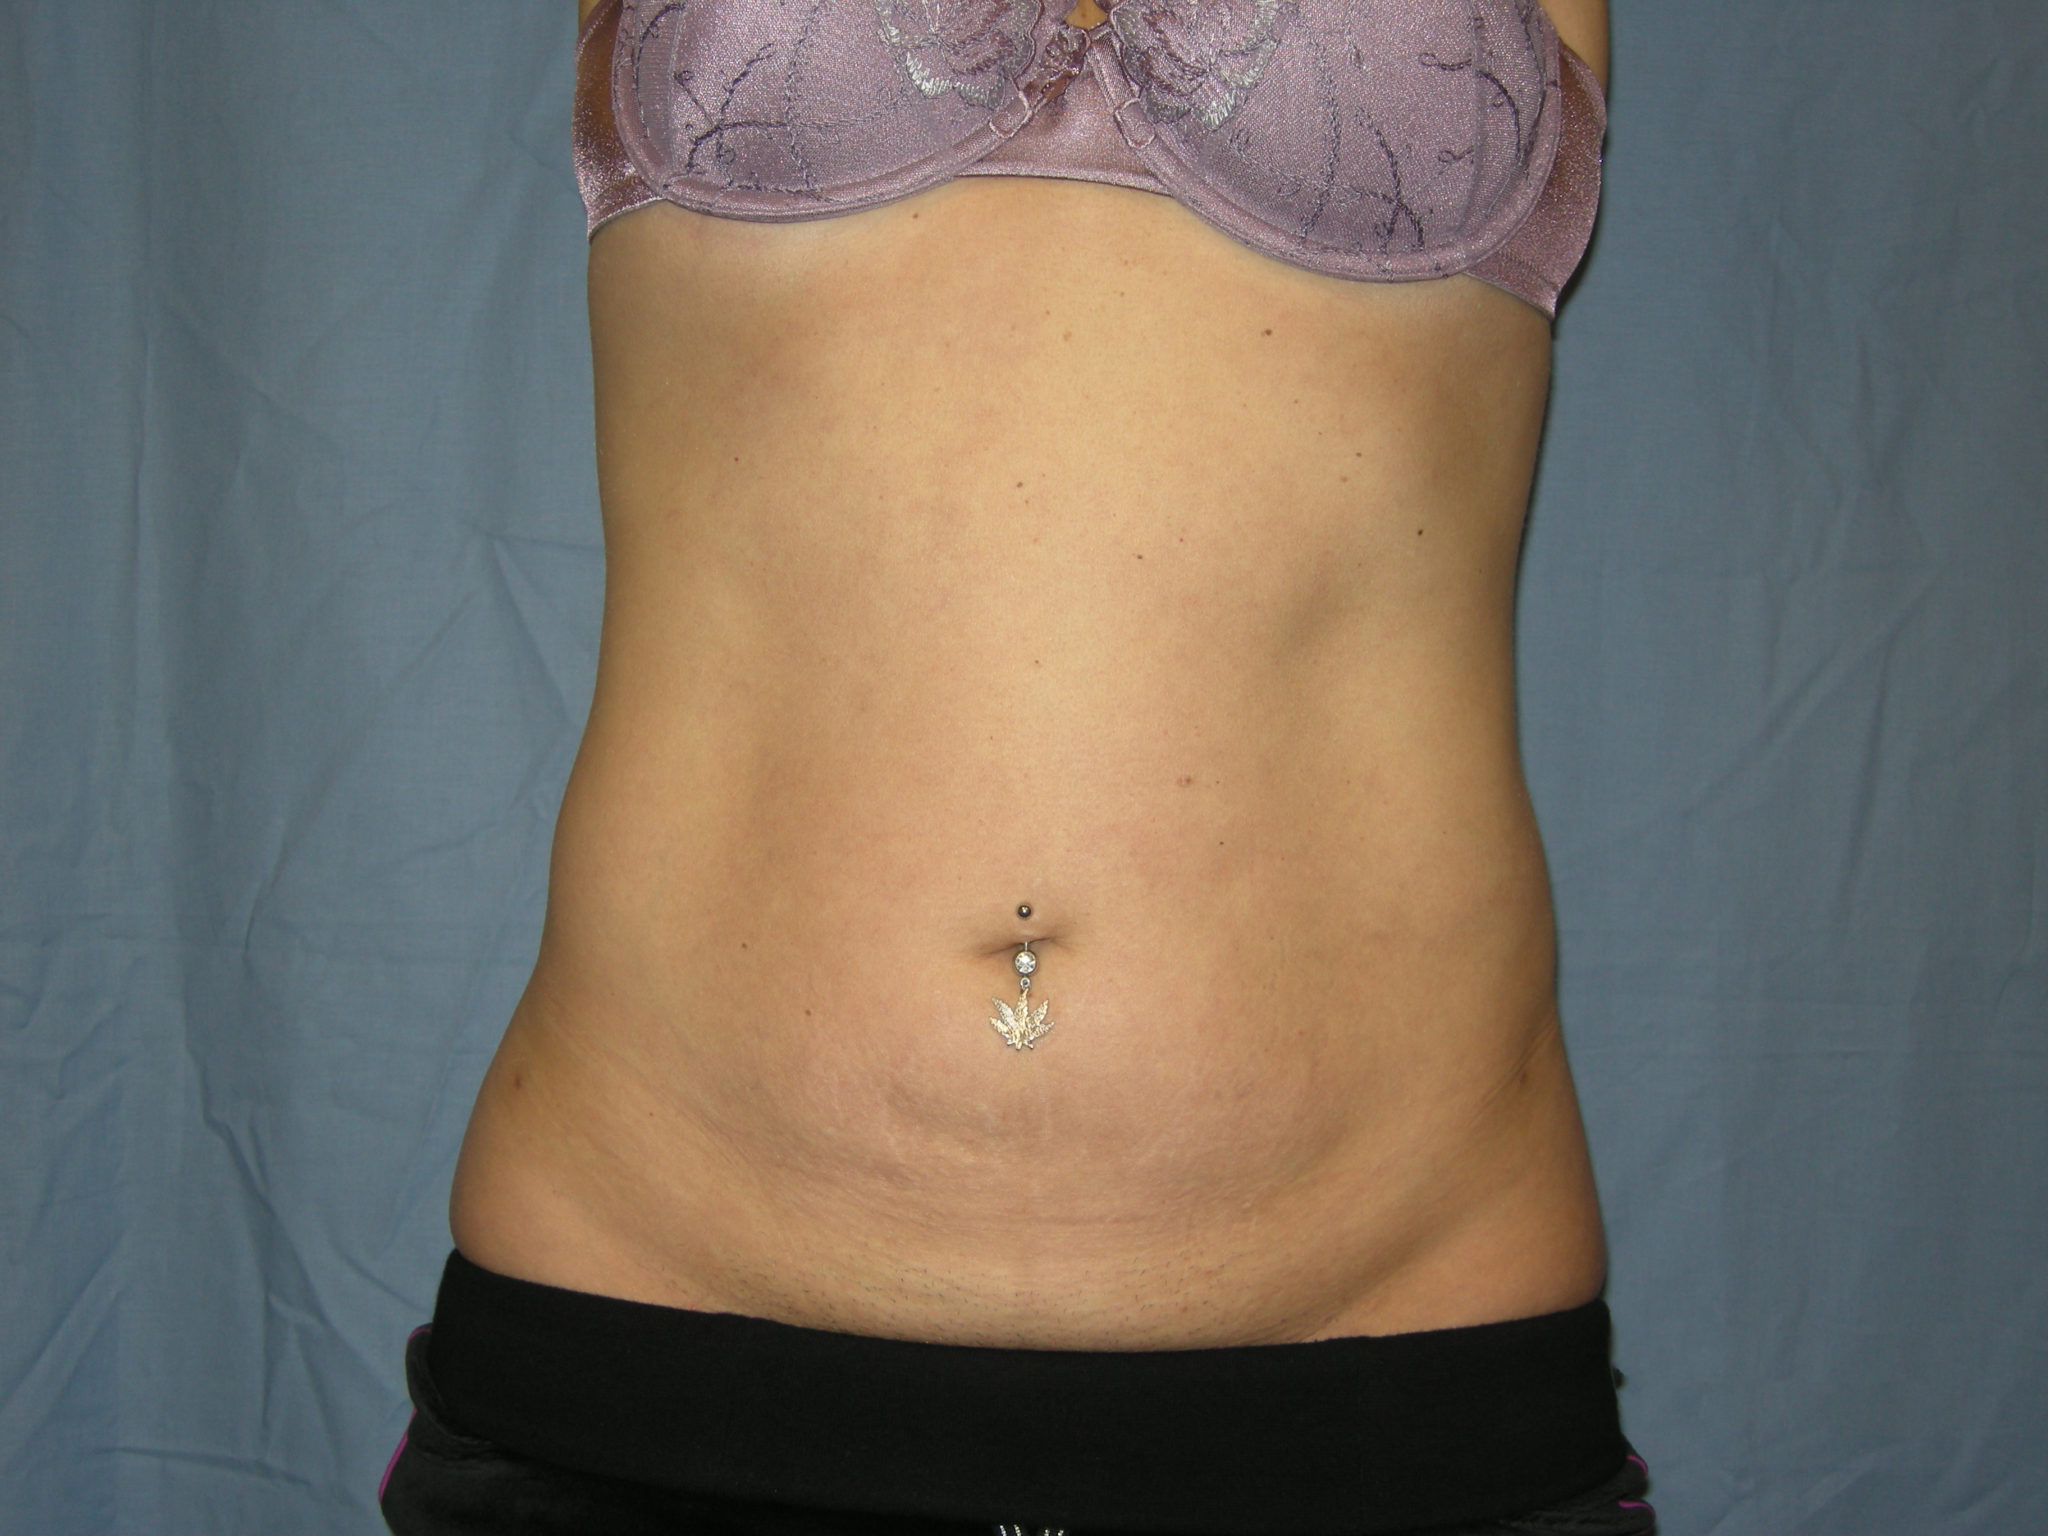 Liposuction Patient Photo - Case 3012 - after view